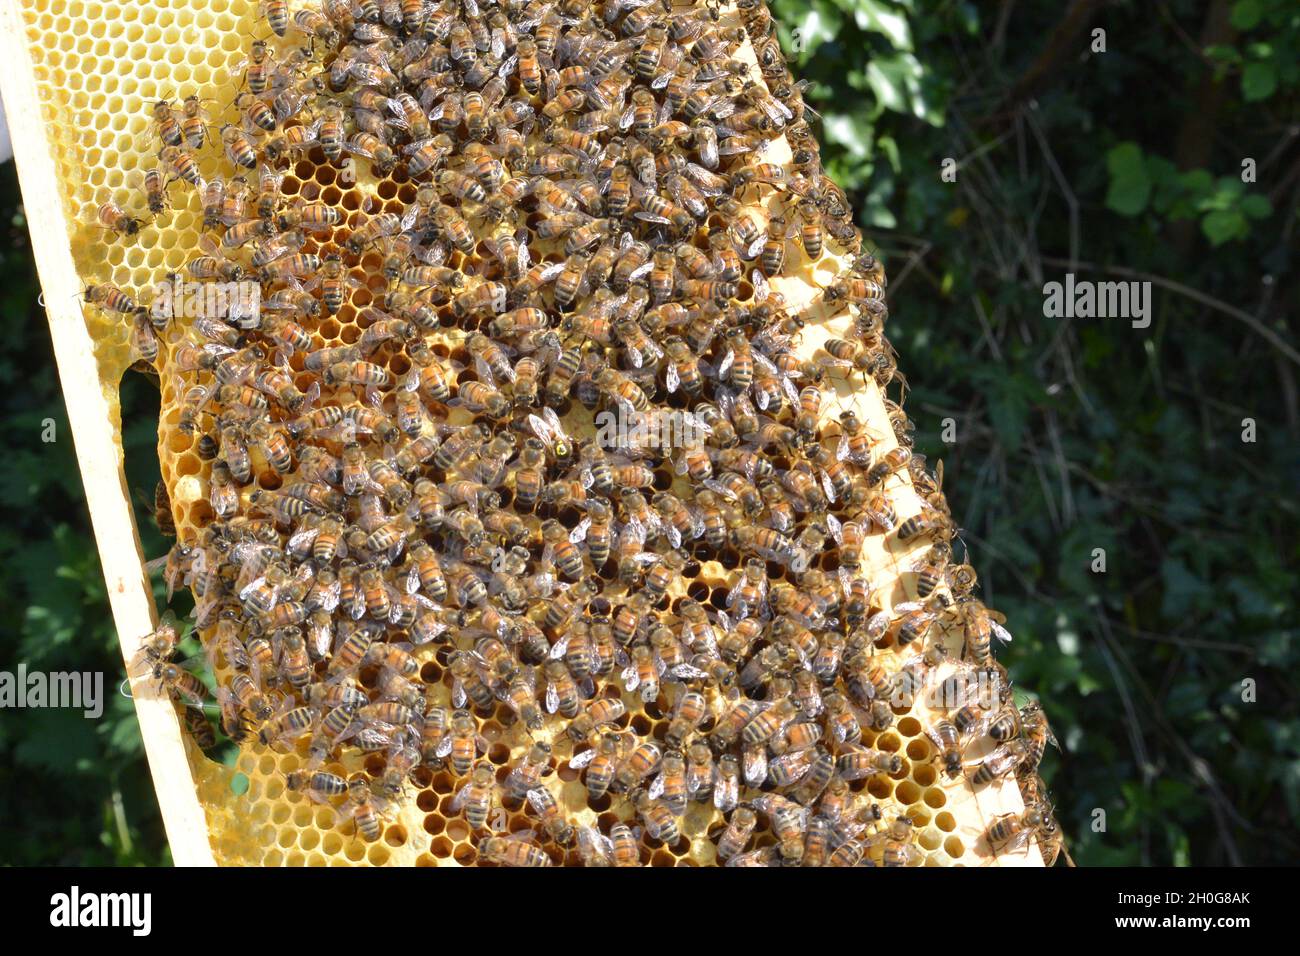 Grande colonie d'abeilles ouvrières (APIs mellifera) en nid d'abeille dans un cadre provenant d'une ruche d'abeille.Certaines cellules sont fermées, beaucoup ne le sont pas. Banque D'Images